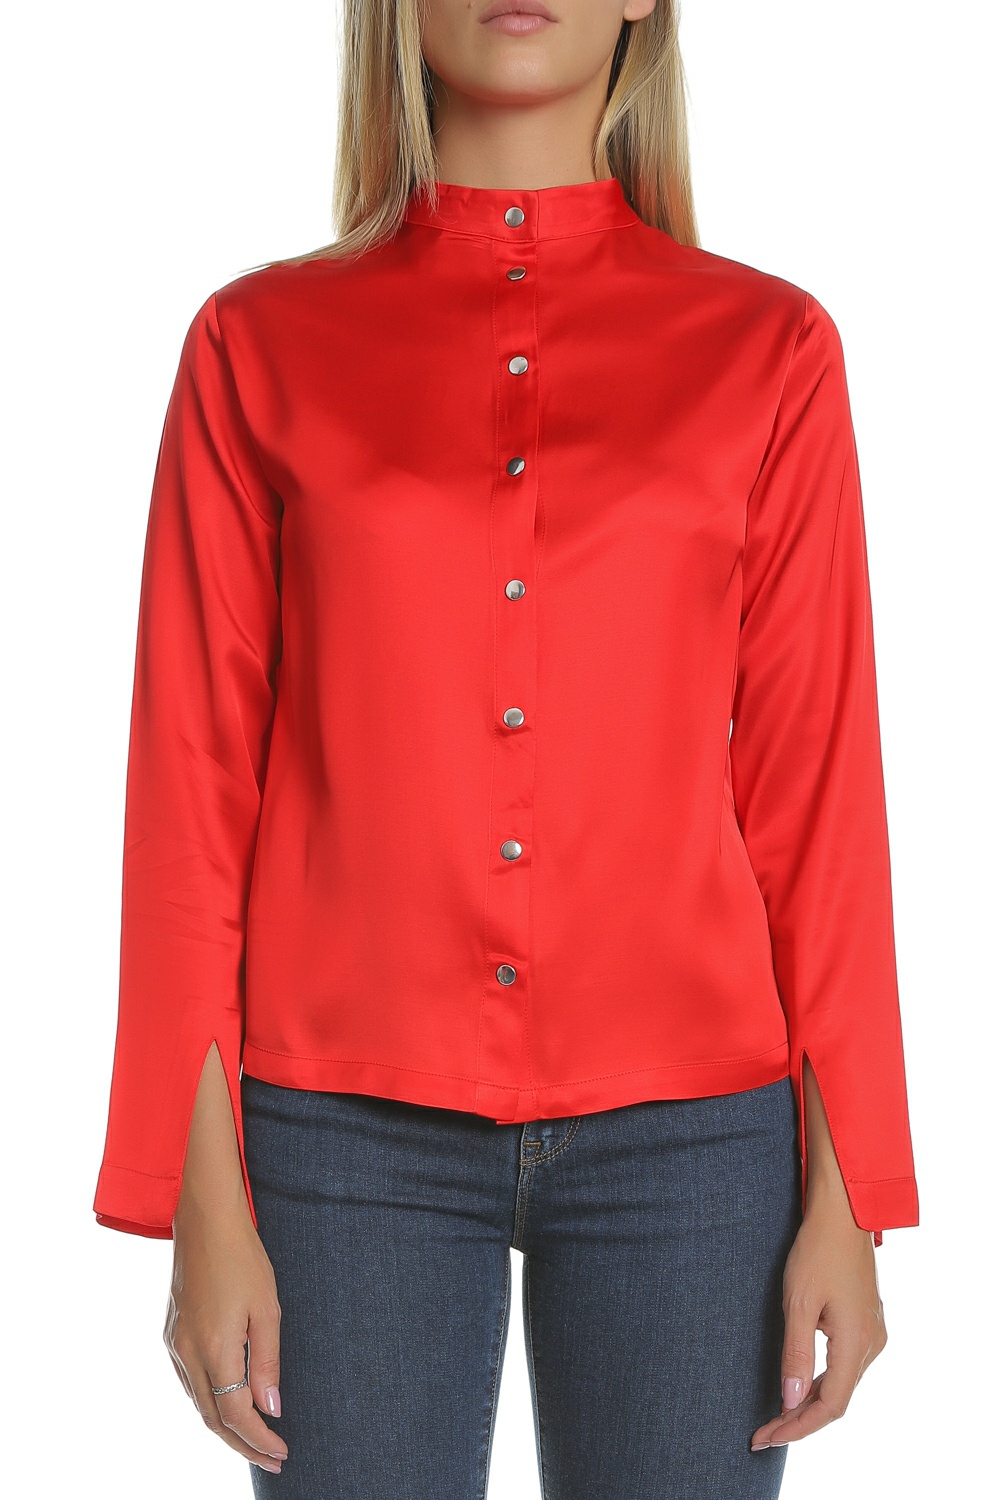 SCOTCH & SODA SCOTCH & SODA - Γυναικεία μακρυμάνικη μπλούζα με κουμπιά SCOTCH & SODA κόκκινη